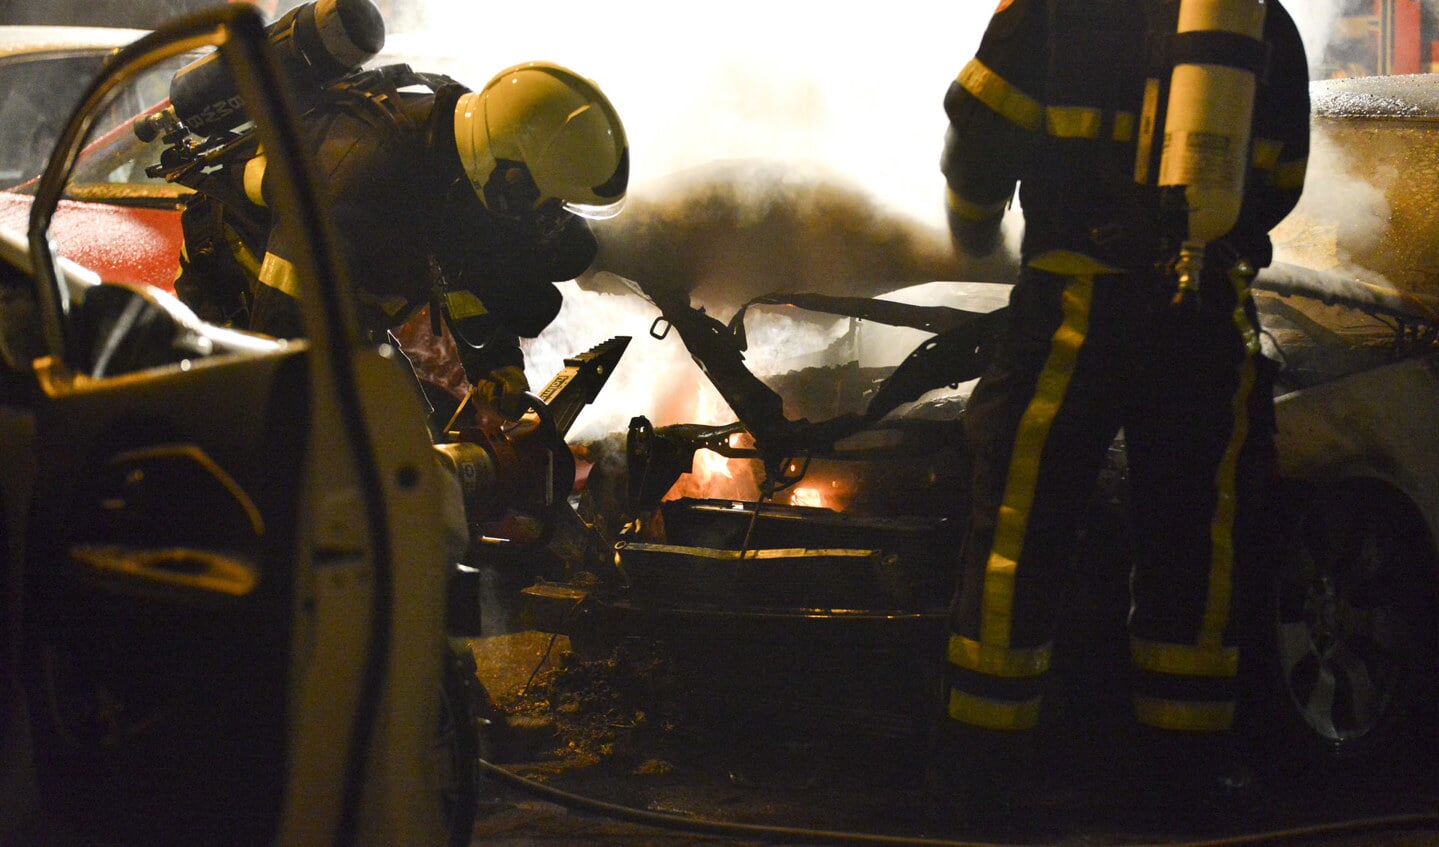 Vier auto's zijn zwaar beschadigd geraakt door een brandende BMW in de Brusselstraat.